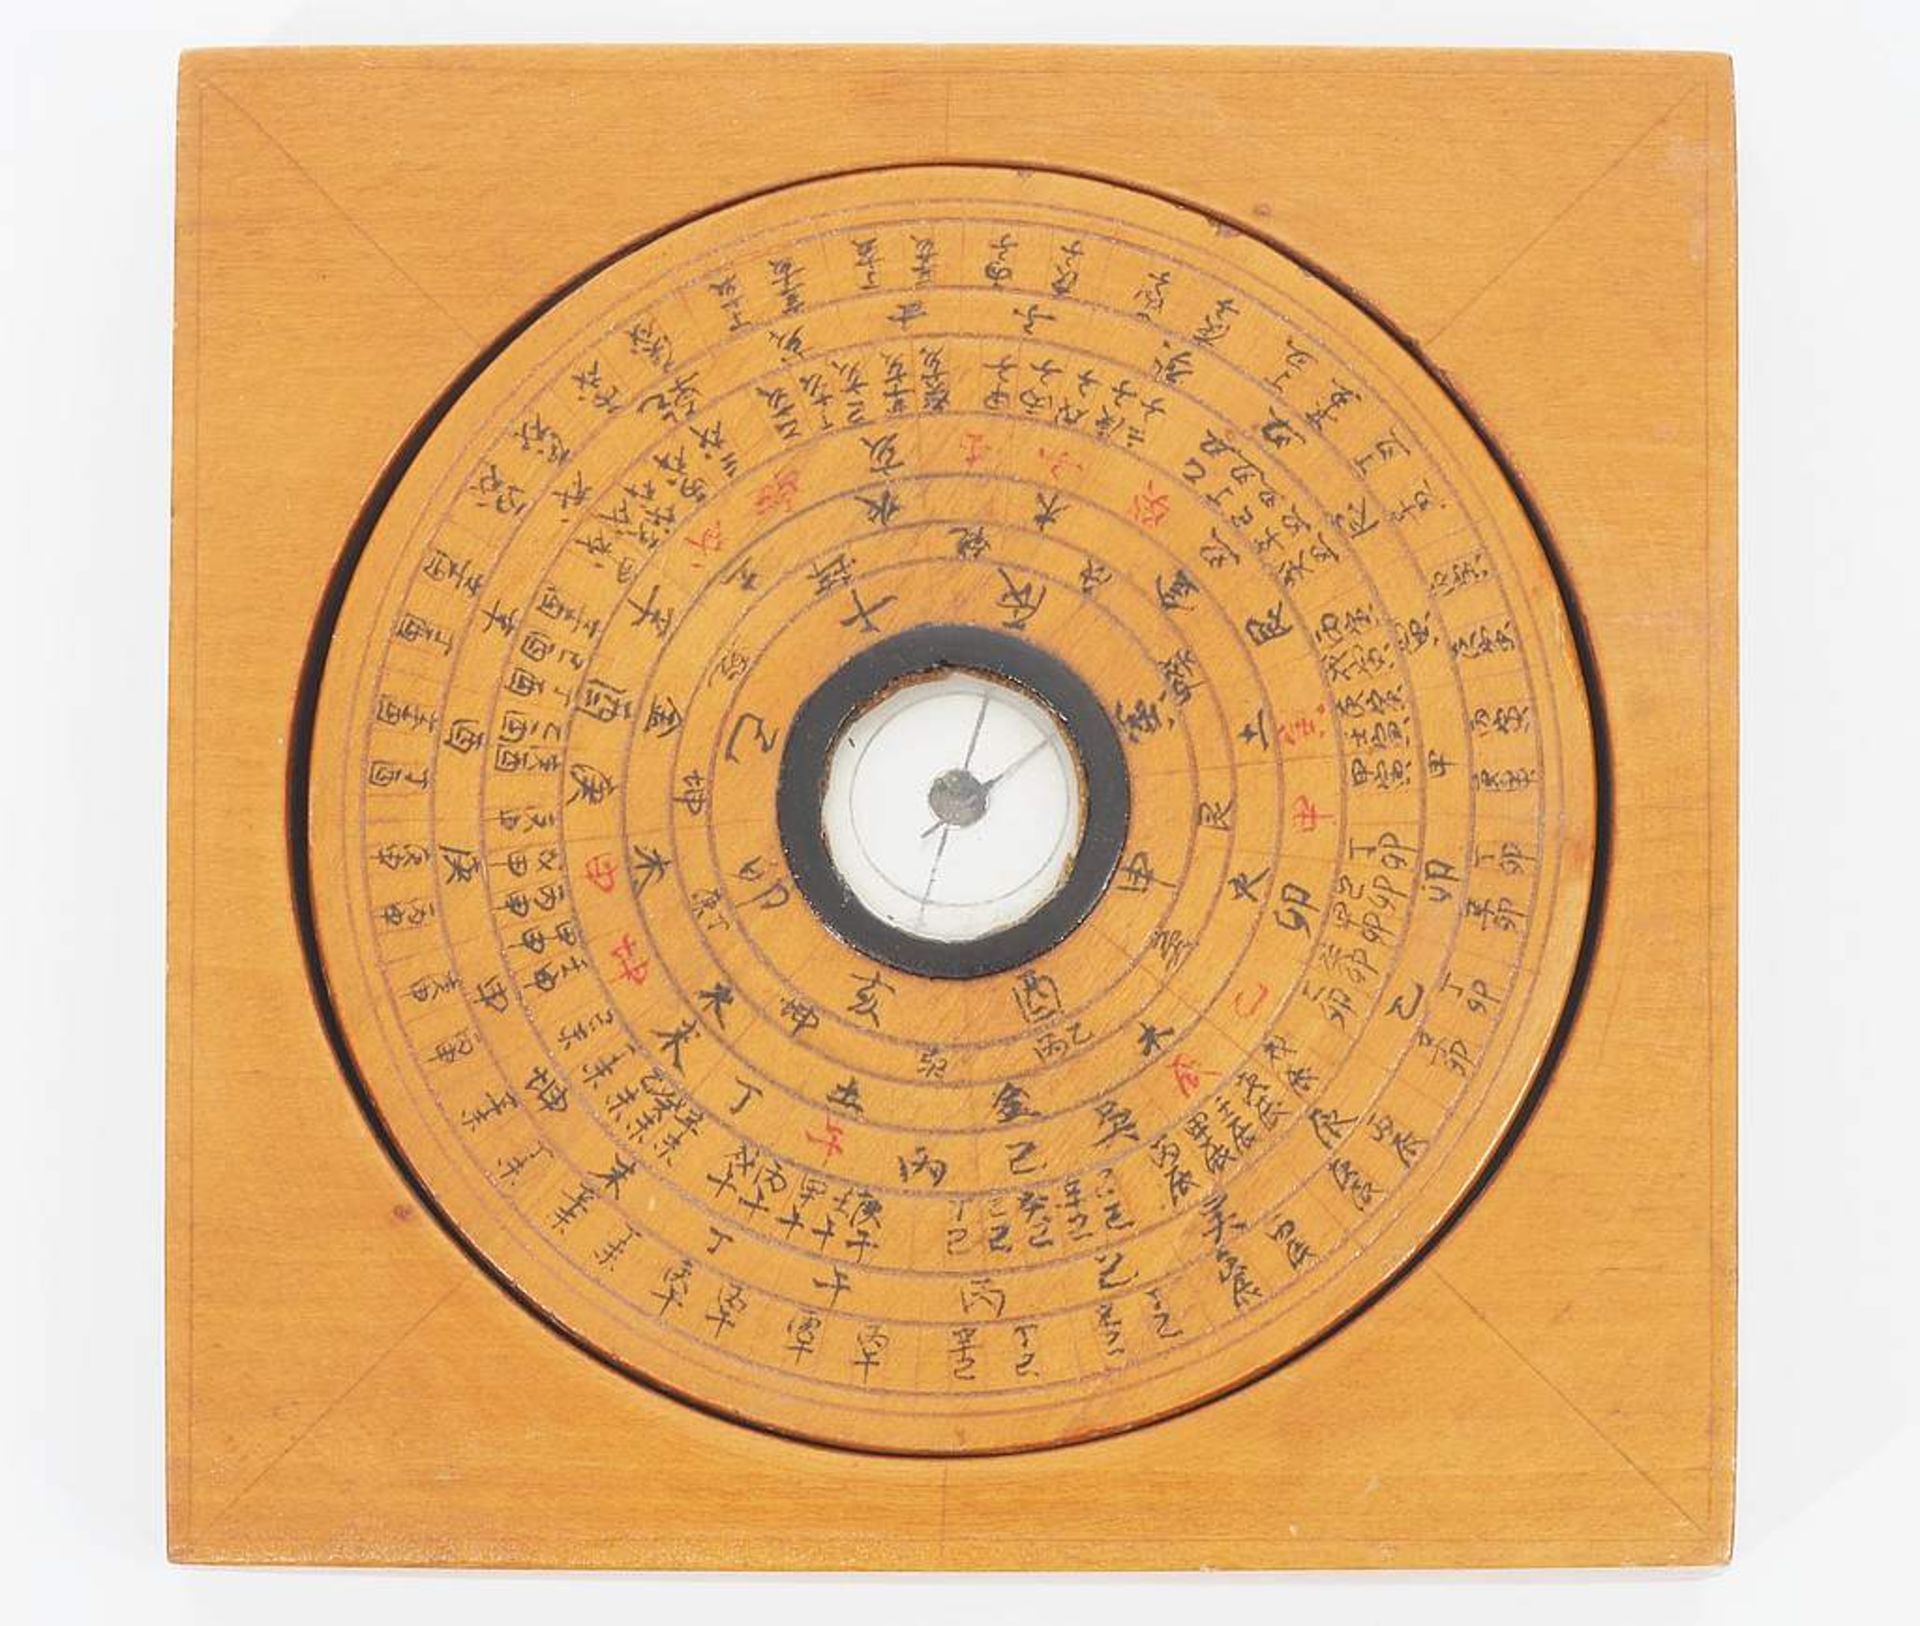 Feng Shui Kompass, China, wohl 19. Jahrhundert. Holzrahmen mit beweglichem Innenkreis, Höhe 2 cm - Bild 2 aus 5